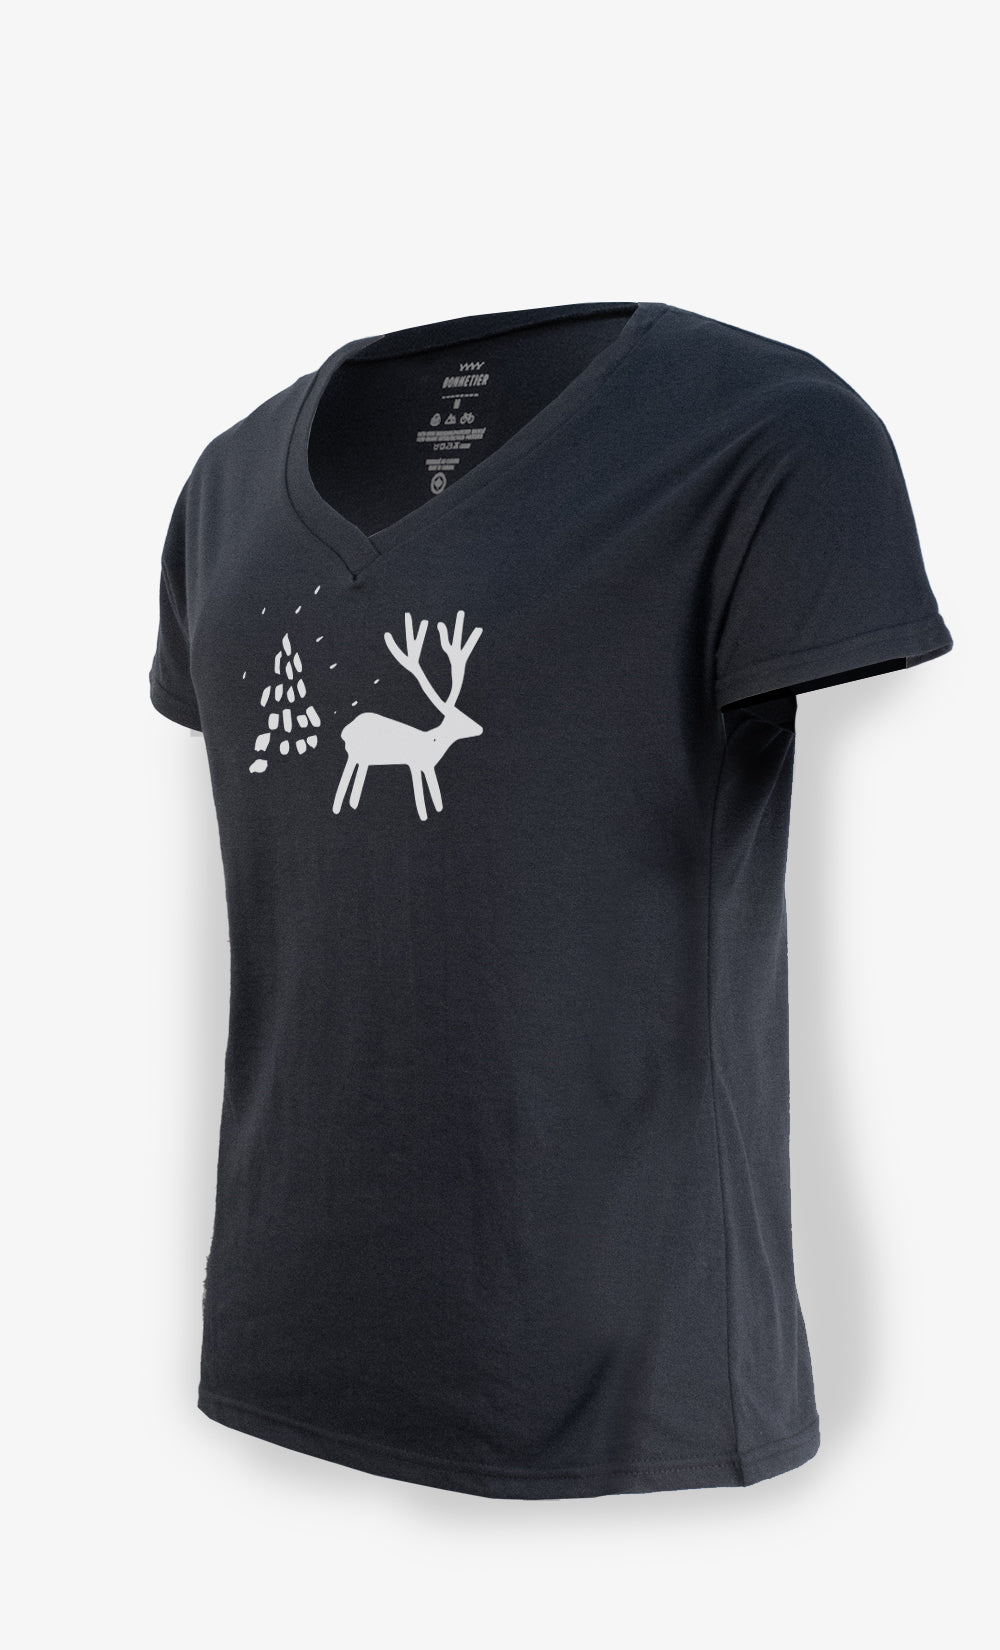 Black Women's T-Shirt - Deer